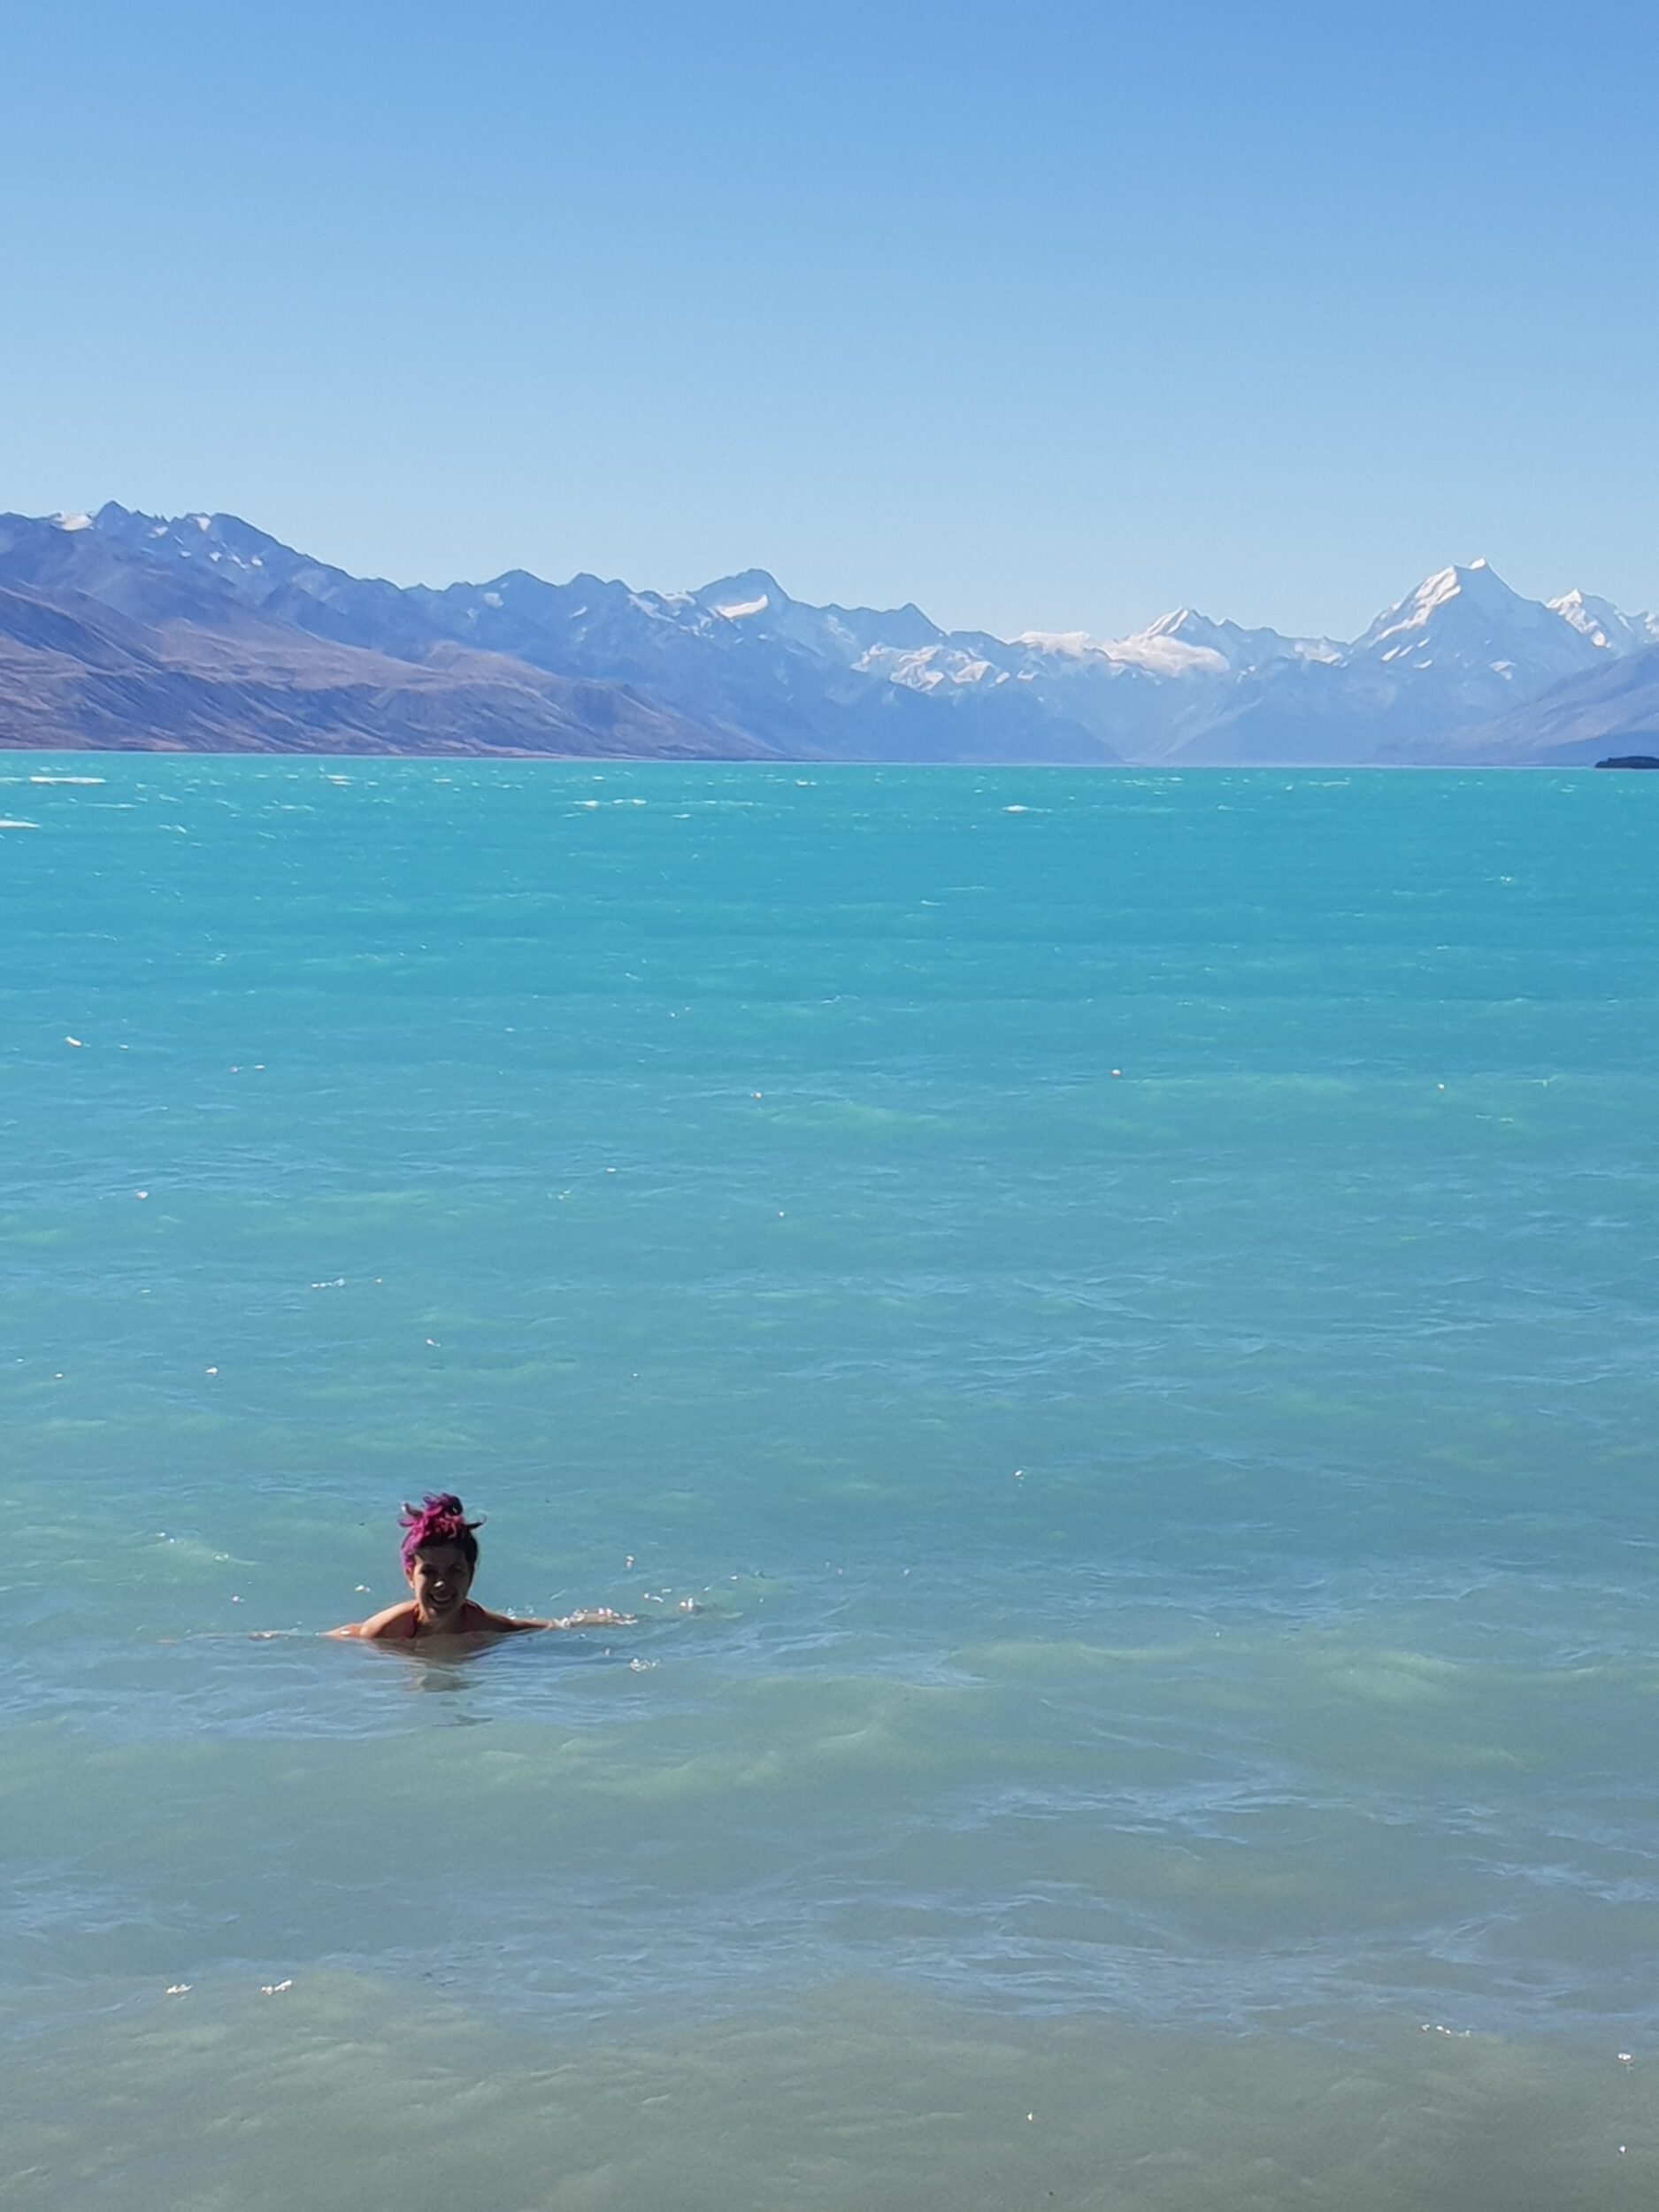 trasferirsi al'estero da sola, storie di donne che vivono all'estero, Lake Pukaki, mount Cook, la montagna più alta della Nuova Zelanda